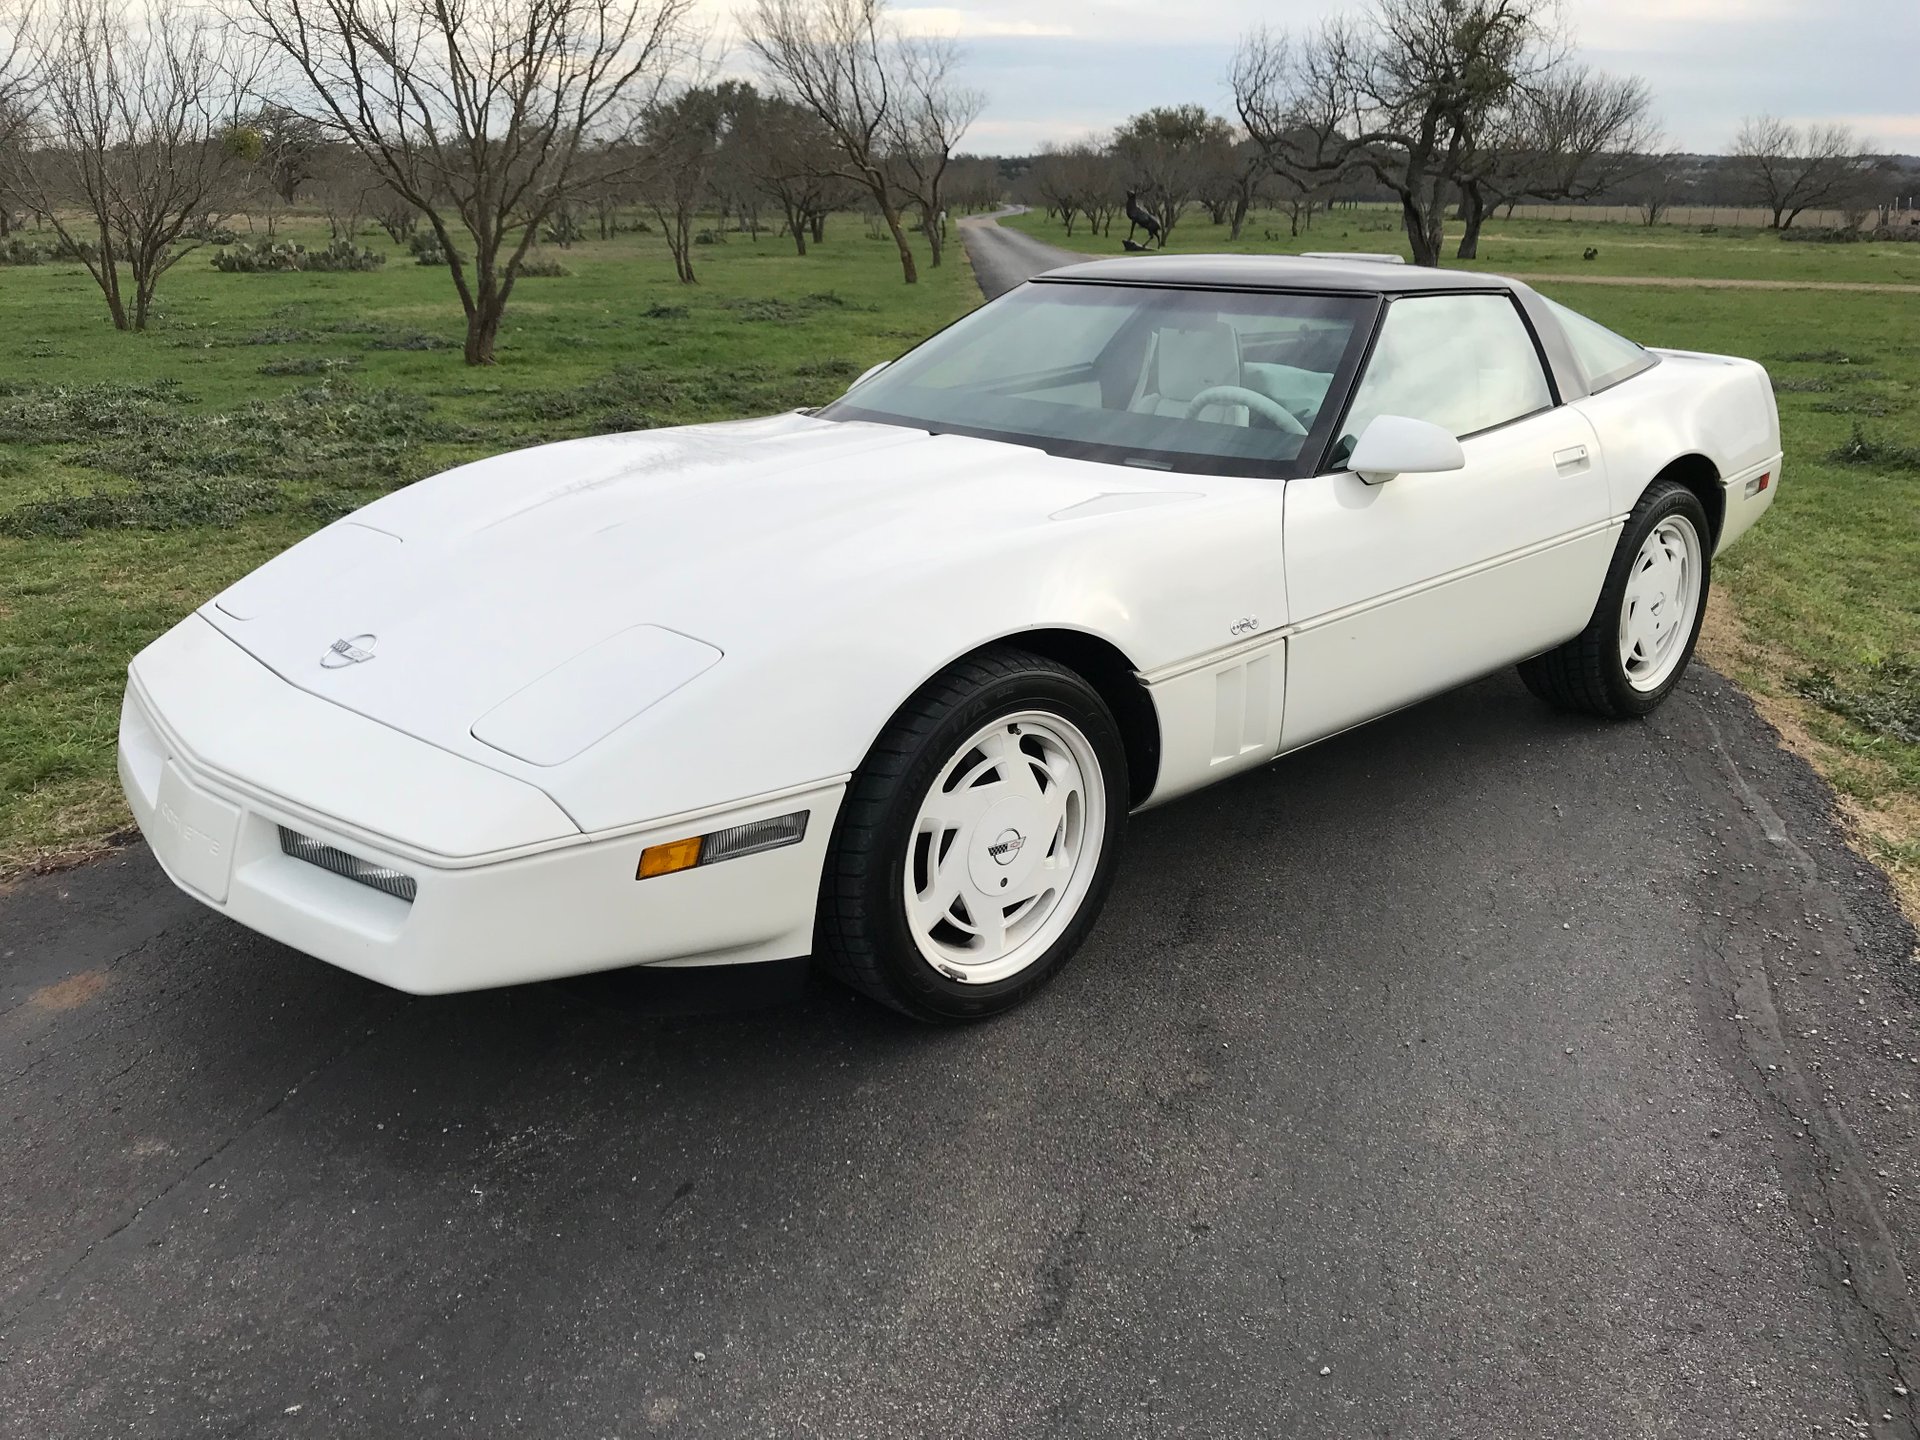 1988 Corvette Wallpapers